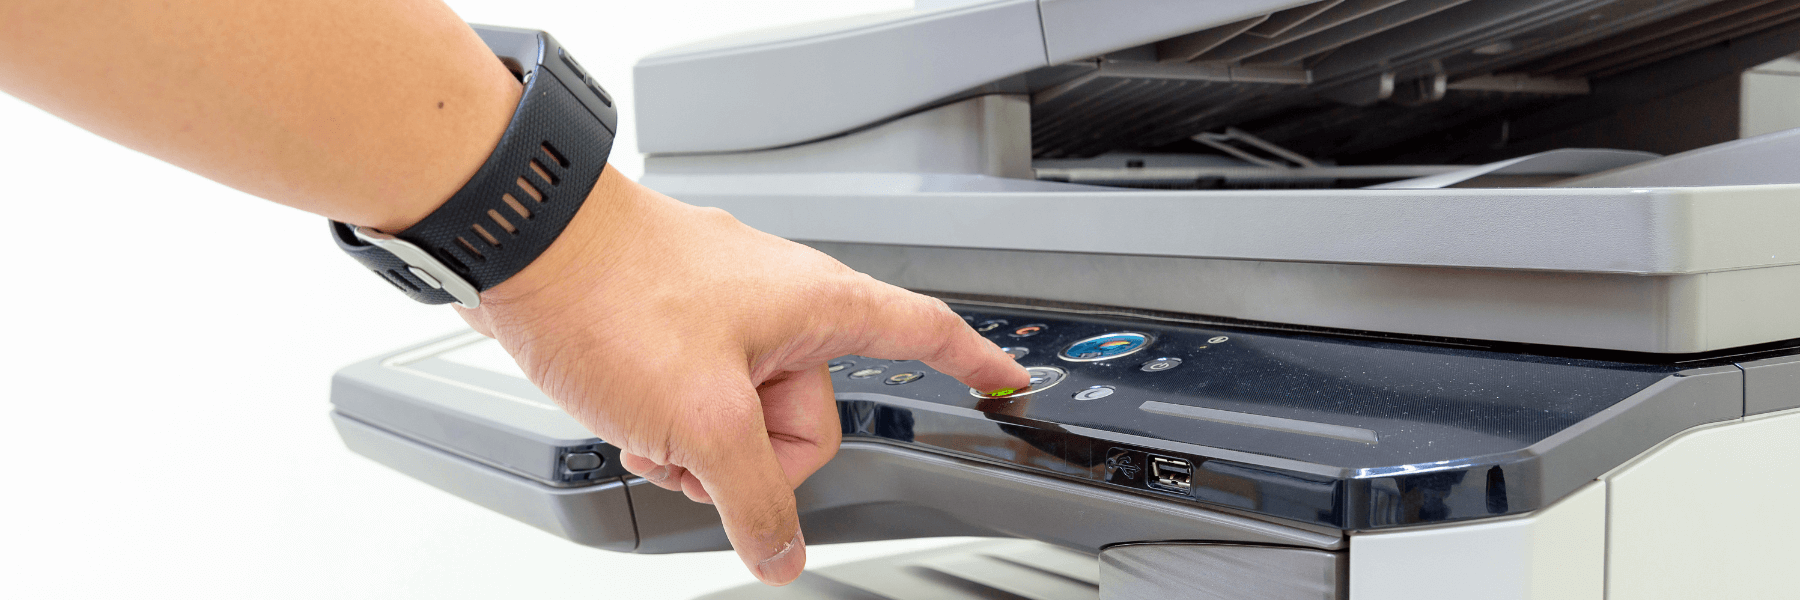 man using multifunction printer